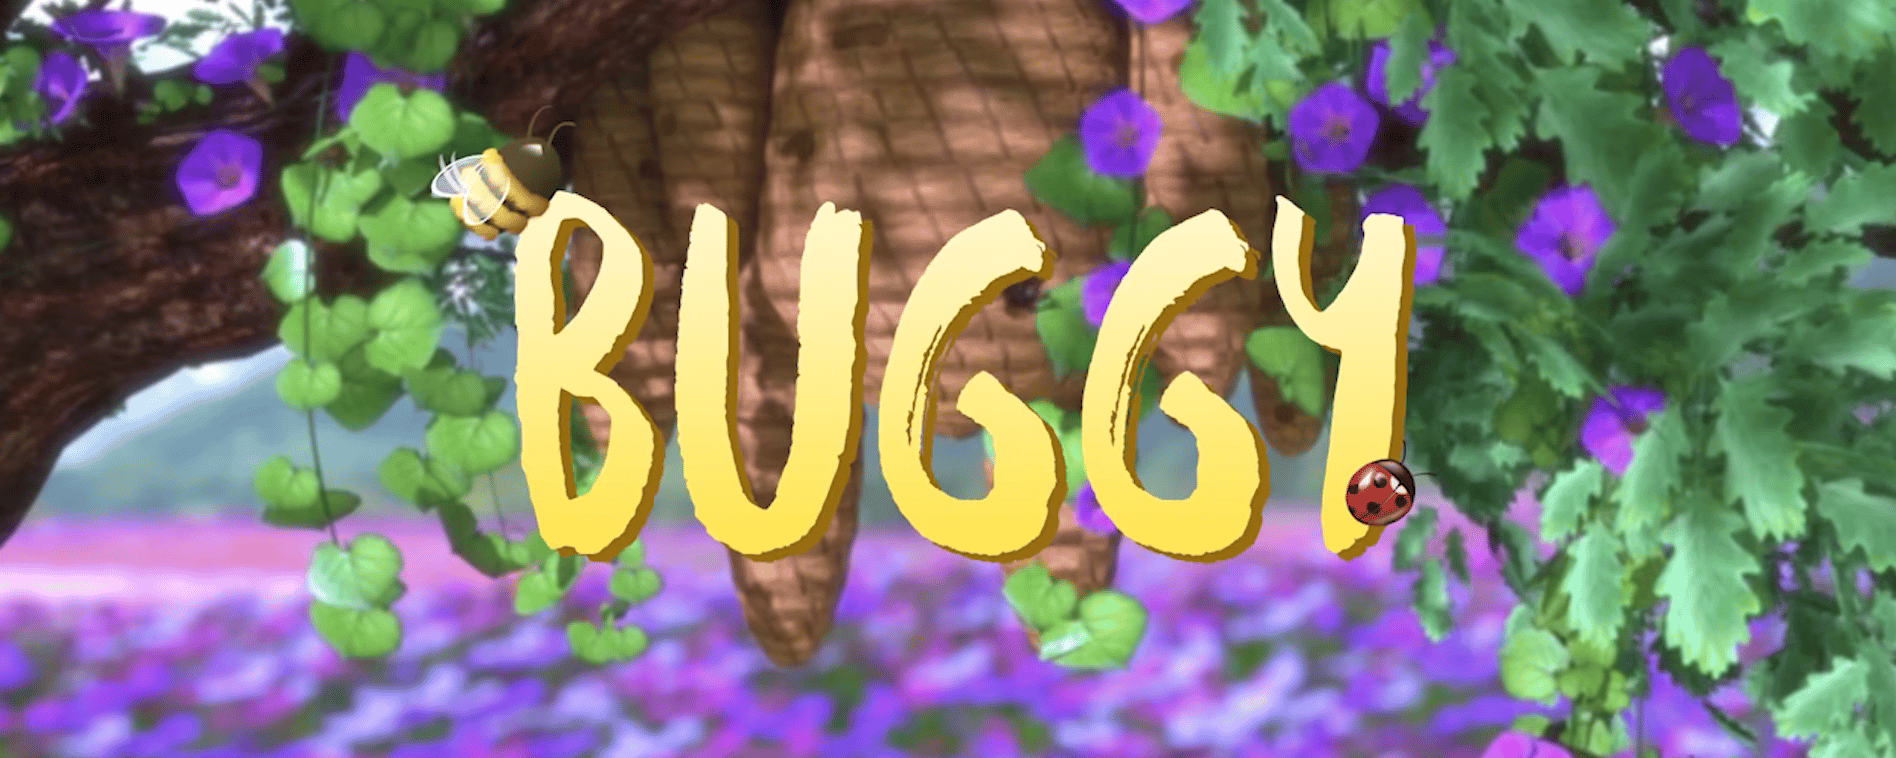 Curta “Buggy”: Cada um dá o que tem